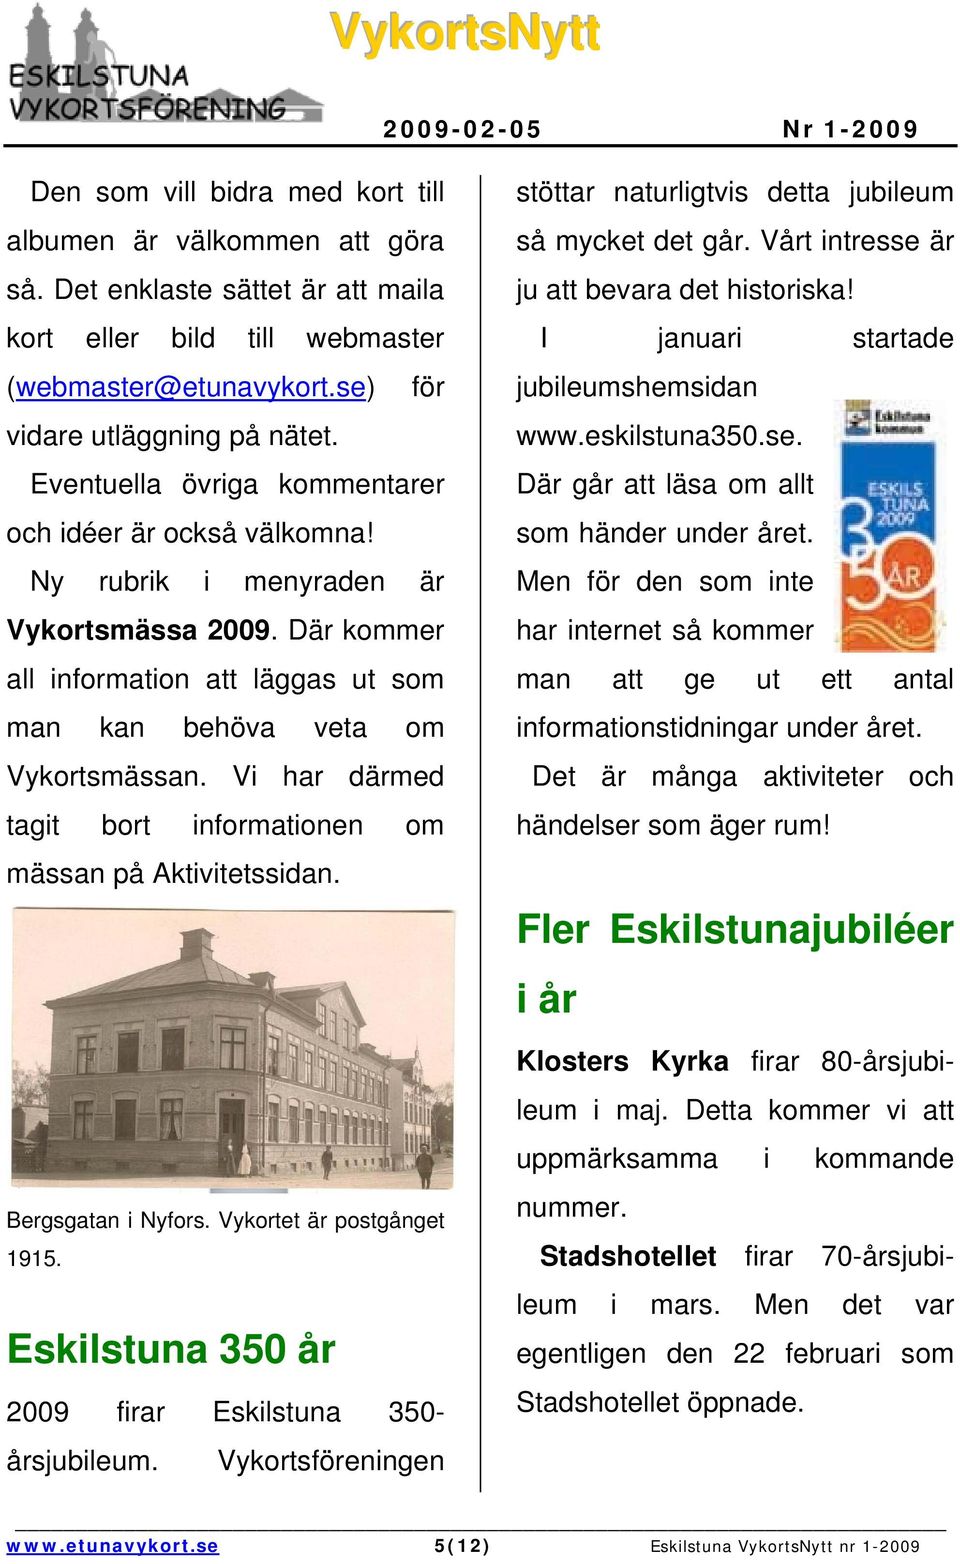 Vi har därmed tagit bort informationen om mässan på Aktivitetssidan. Bergsgatan i Nyfors. Vykortet är postgånget 1915. Eskilstuna 350 år 2009 firar Eskilstuna 350- årsjubileum.